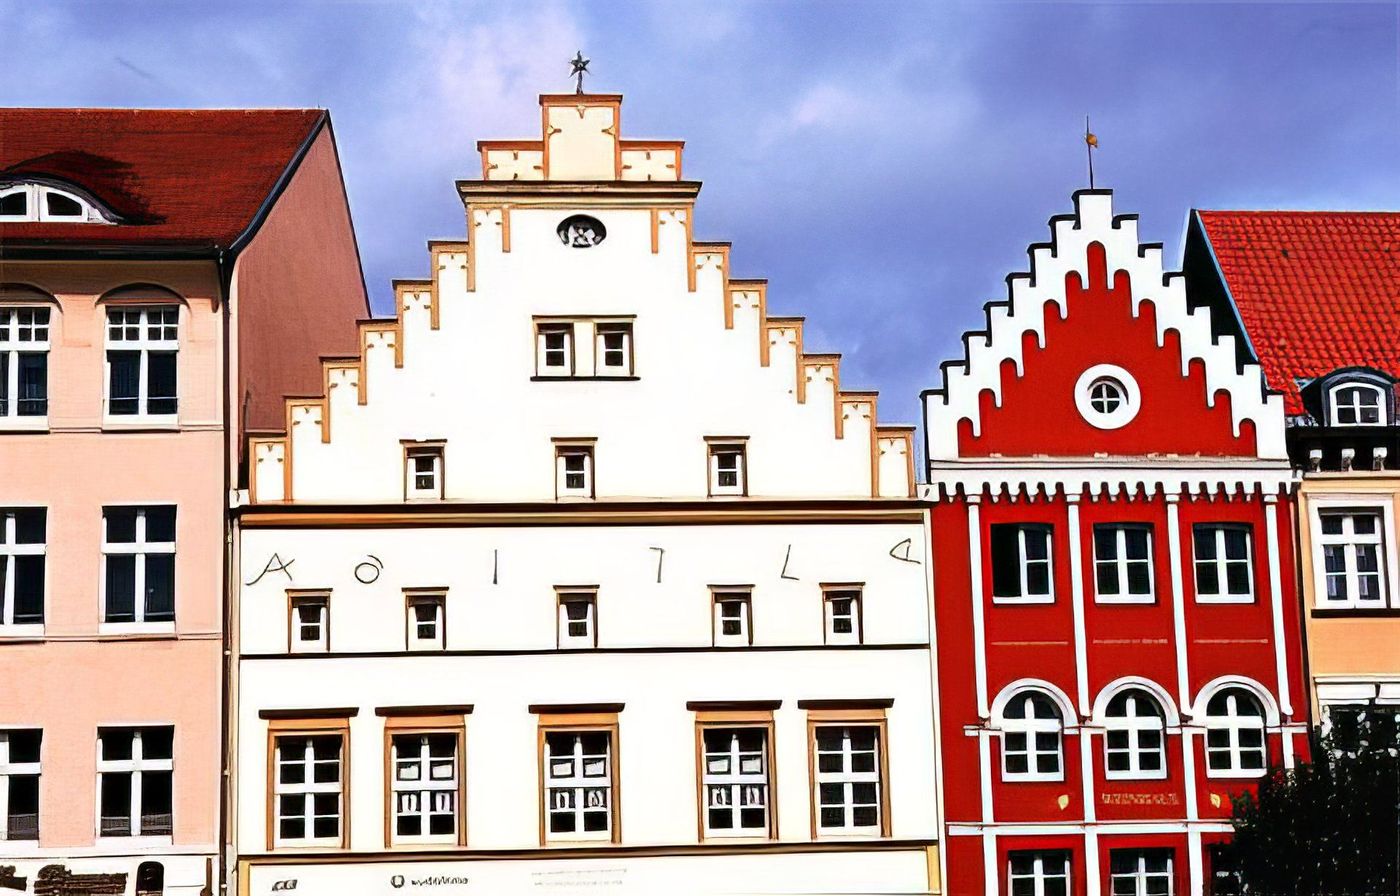 Les façades autour du Marktplatz